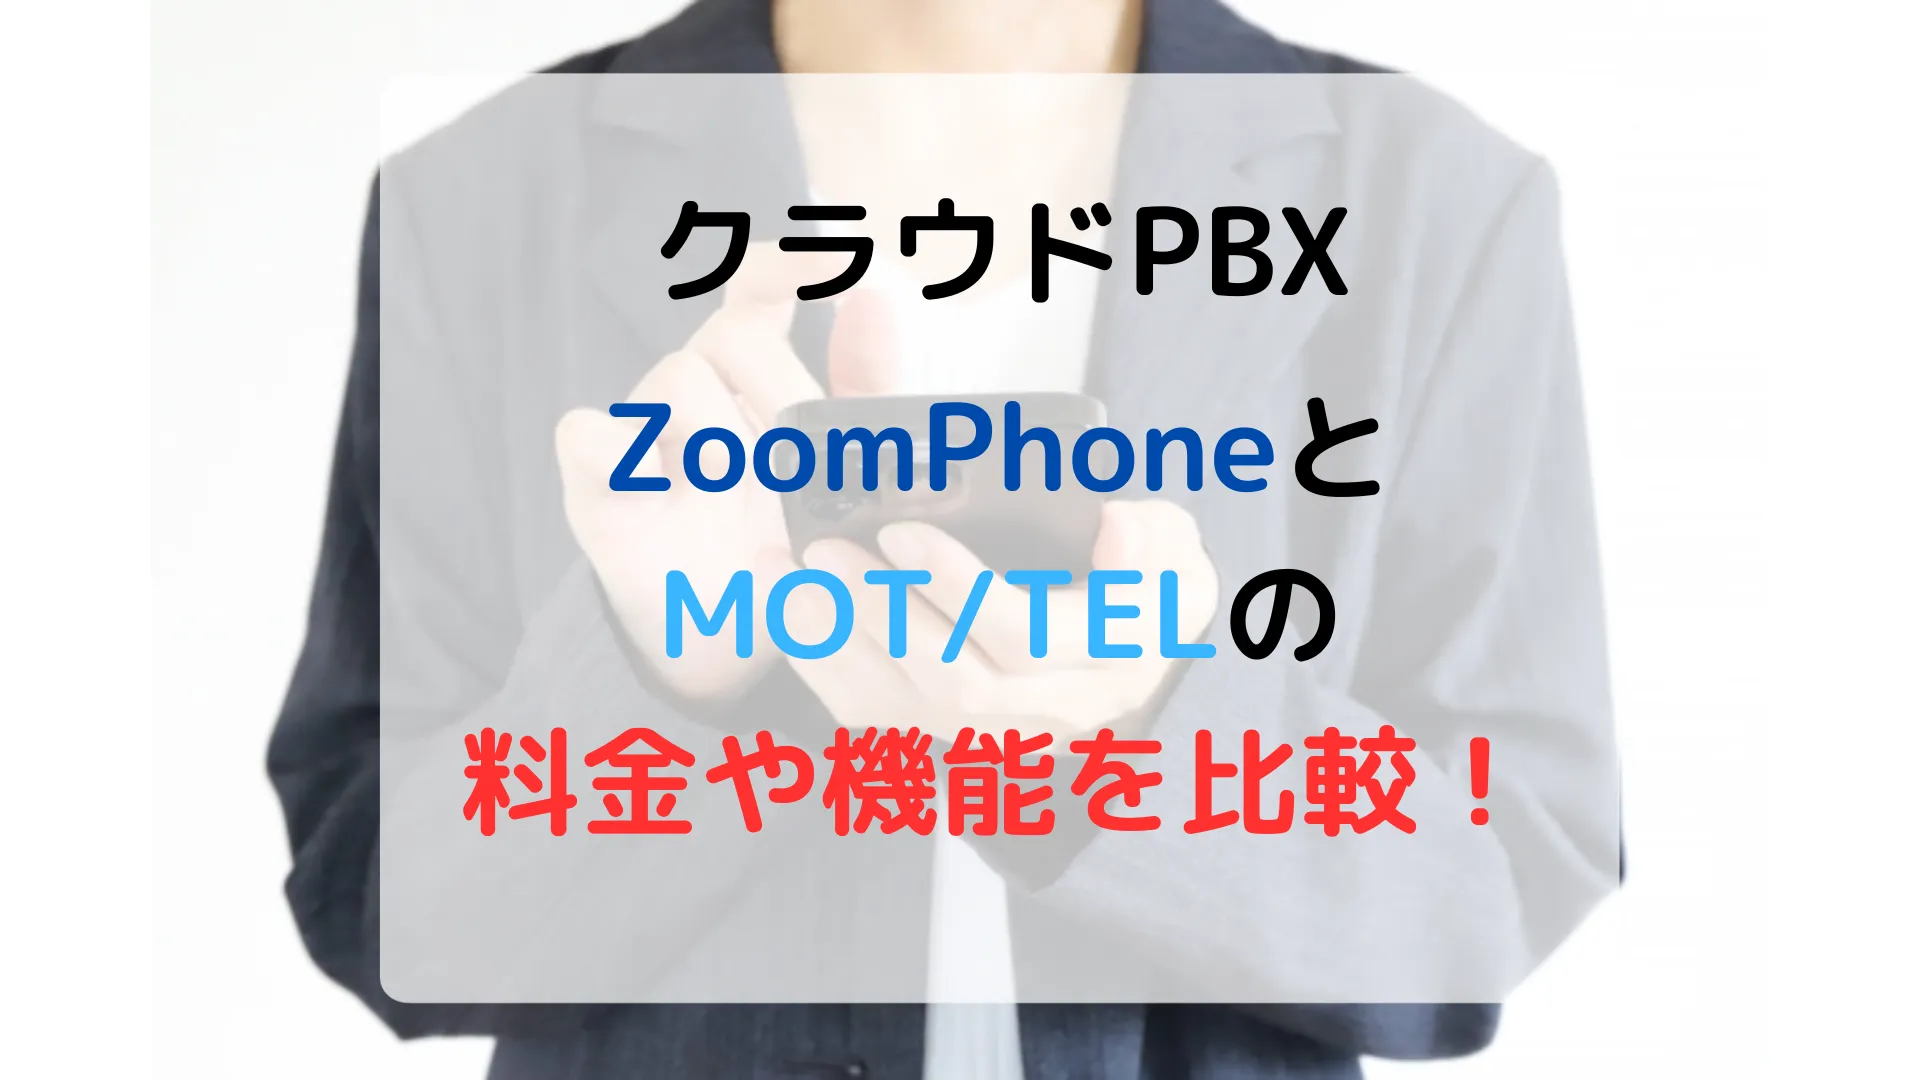 ZoomphoneとMOT/TELの料金や機能を比較